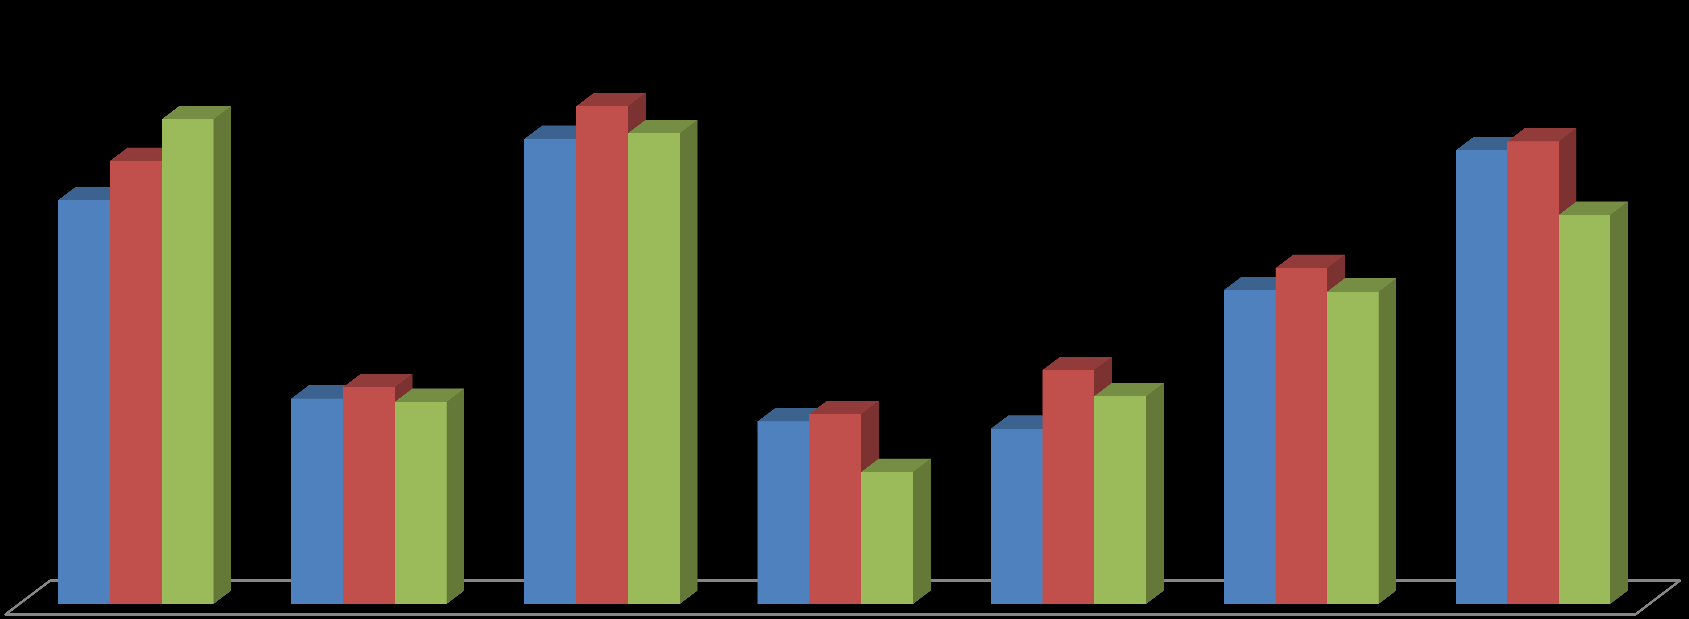 FONTES UTILIZADAS PARA BUSCAR CANDIDATOS COM DEFICIÊNCIA 2014 2015 2016 54% 50% 59% 61% 58% 58% 55% 57% 48% 41% 39% 38% 27% 25% 25% 29% 23% 23% 22% 26% 16% Sites de emprego online Consultorias